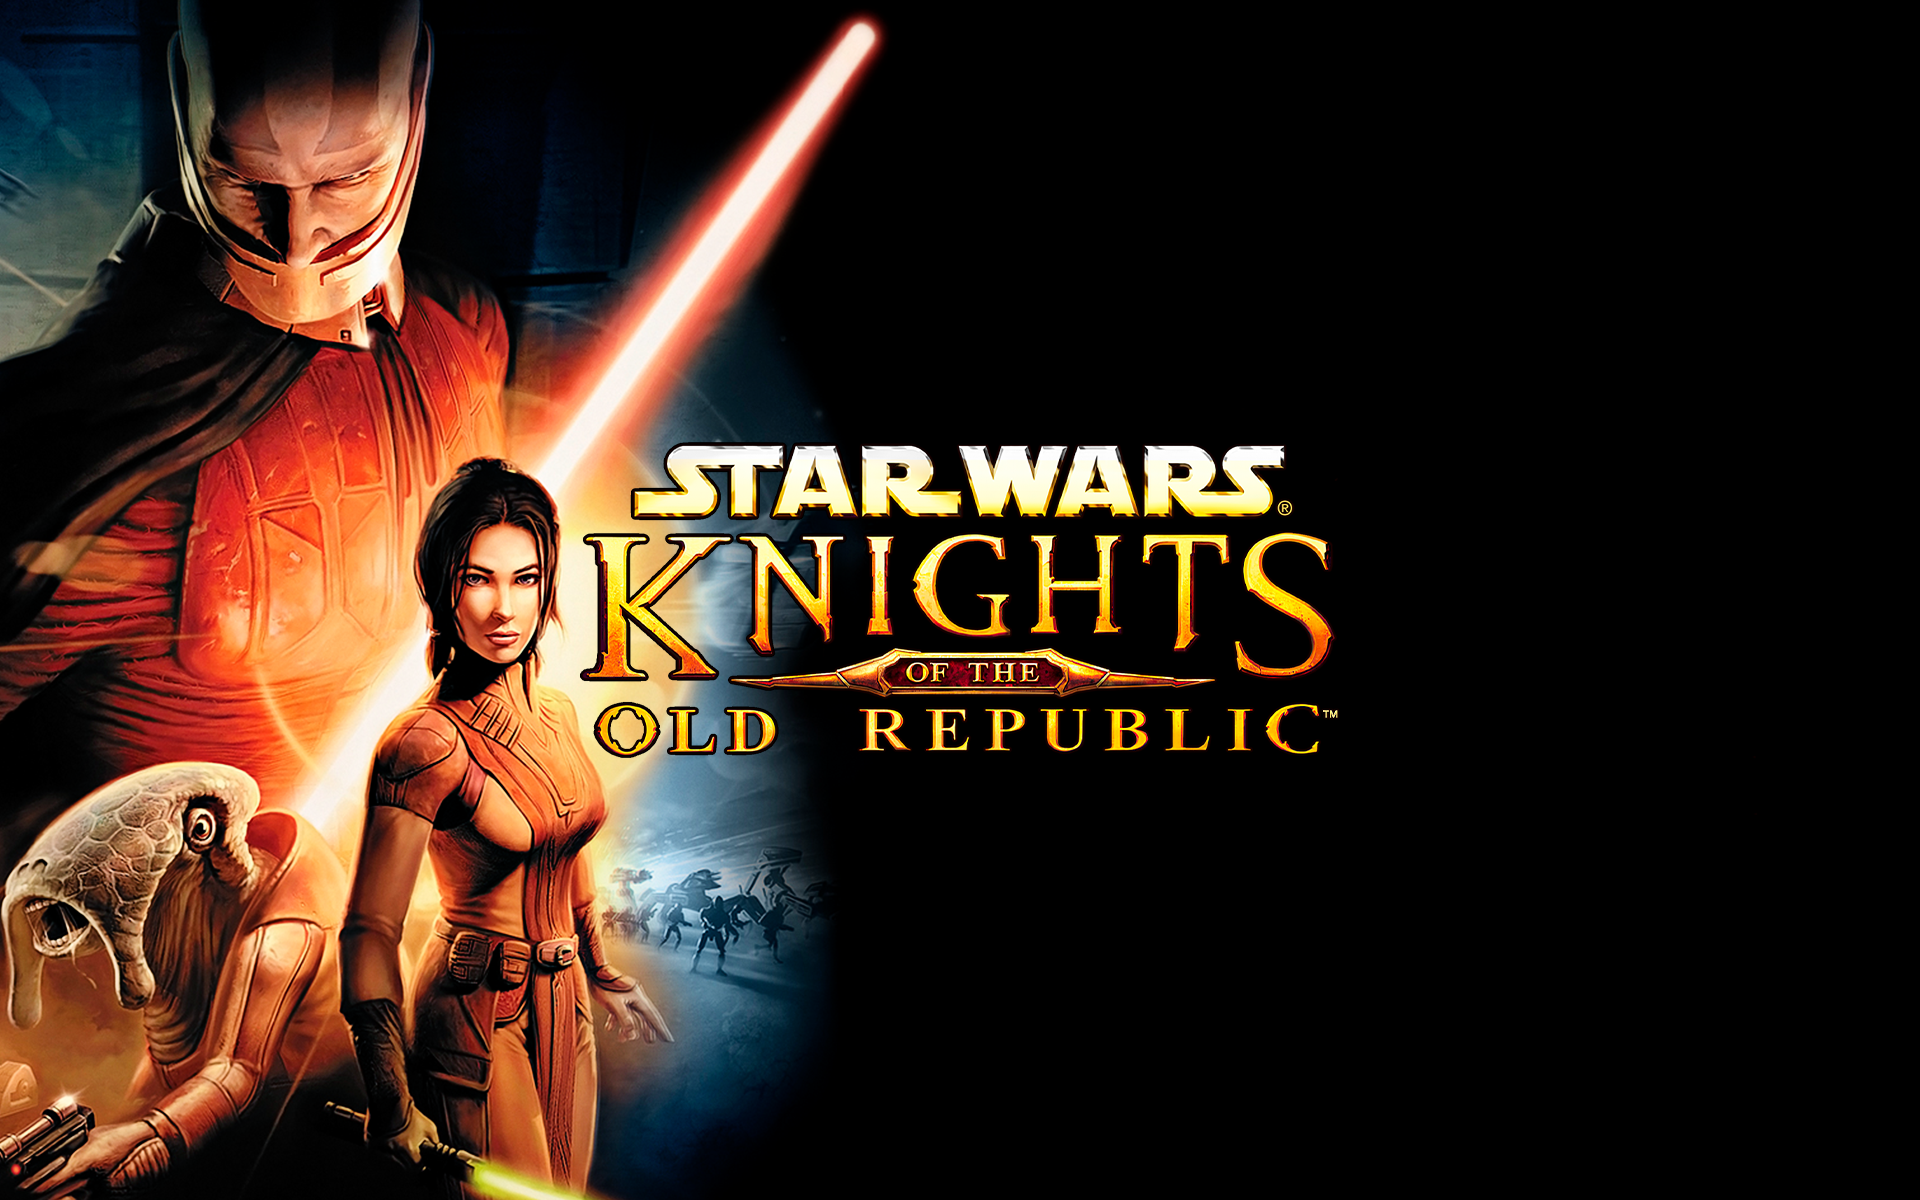 Knights of the Old Republic I - 15 anos de história! - Sociedade Jedi